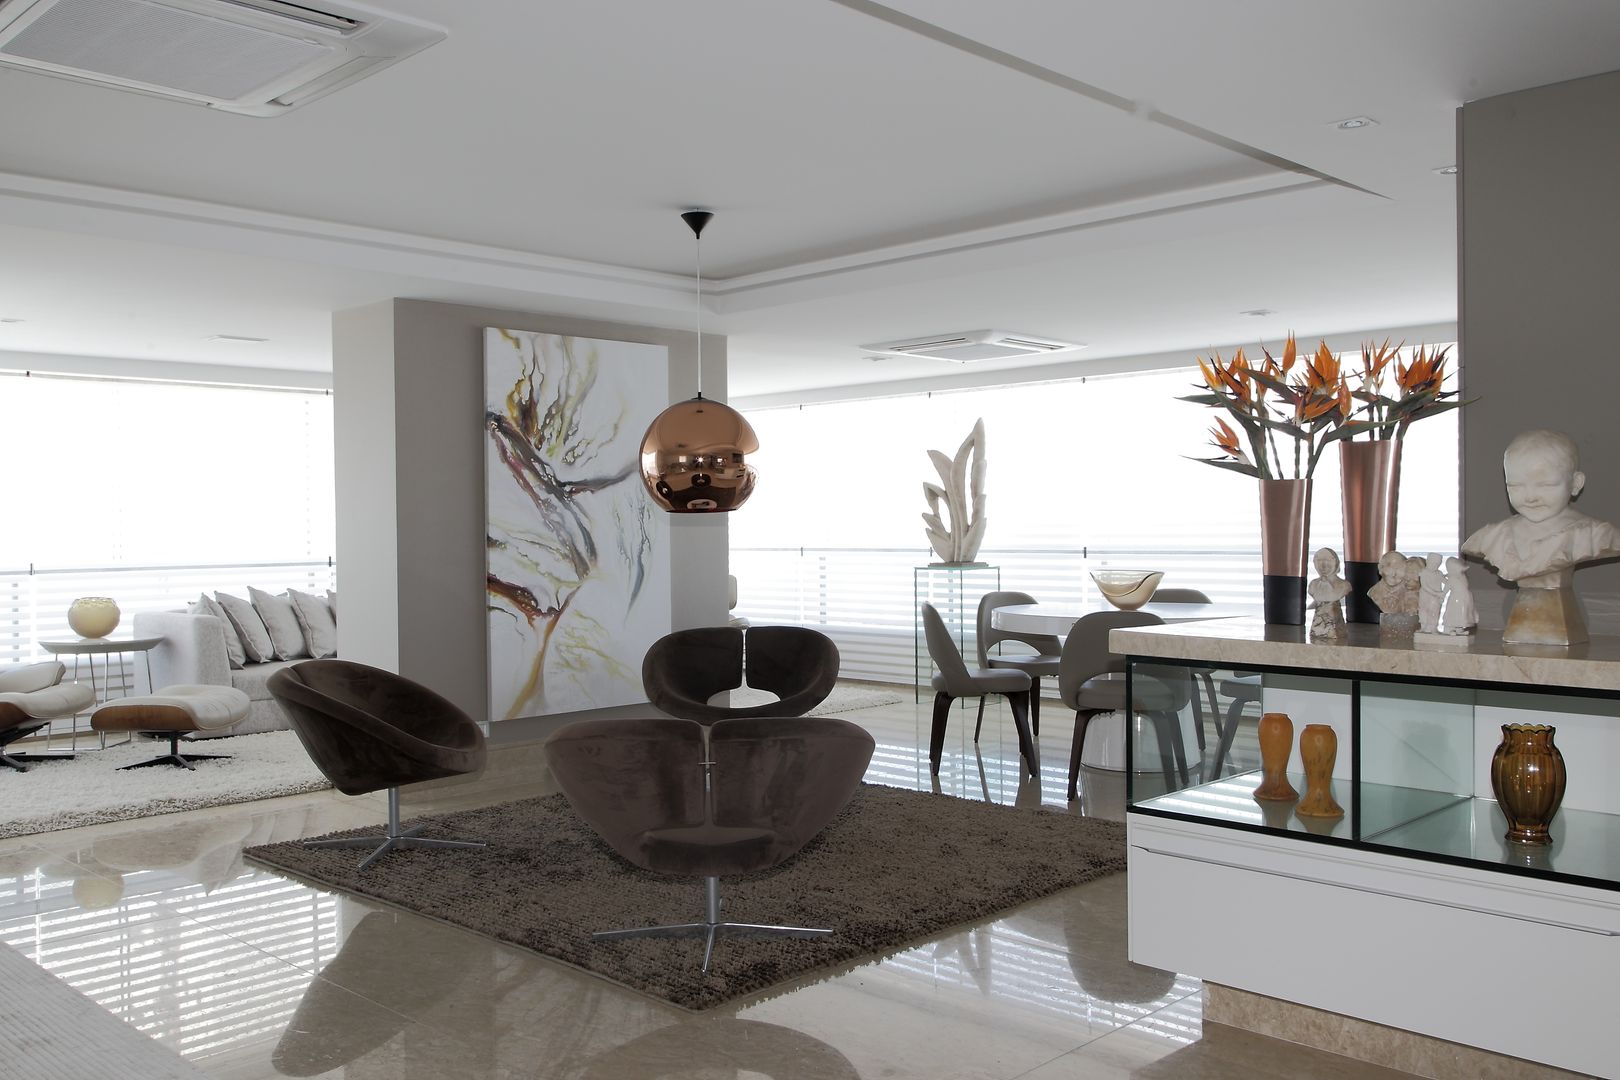 APARTAMENTO 300m2 - CASA FORTE- RECIFE-PE, ROMERO DUARTE & ARQUITETOS ROMERO DUARTE & ARQUITETOS Modern living room